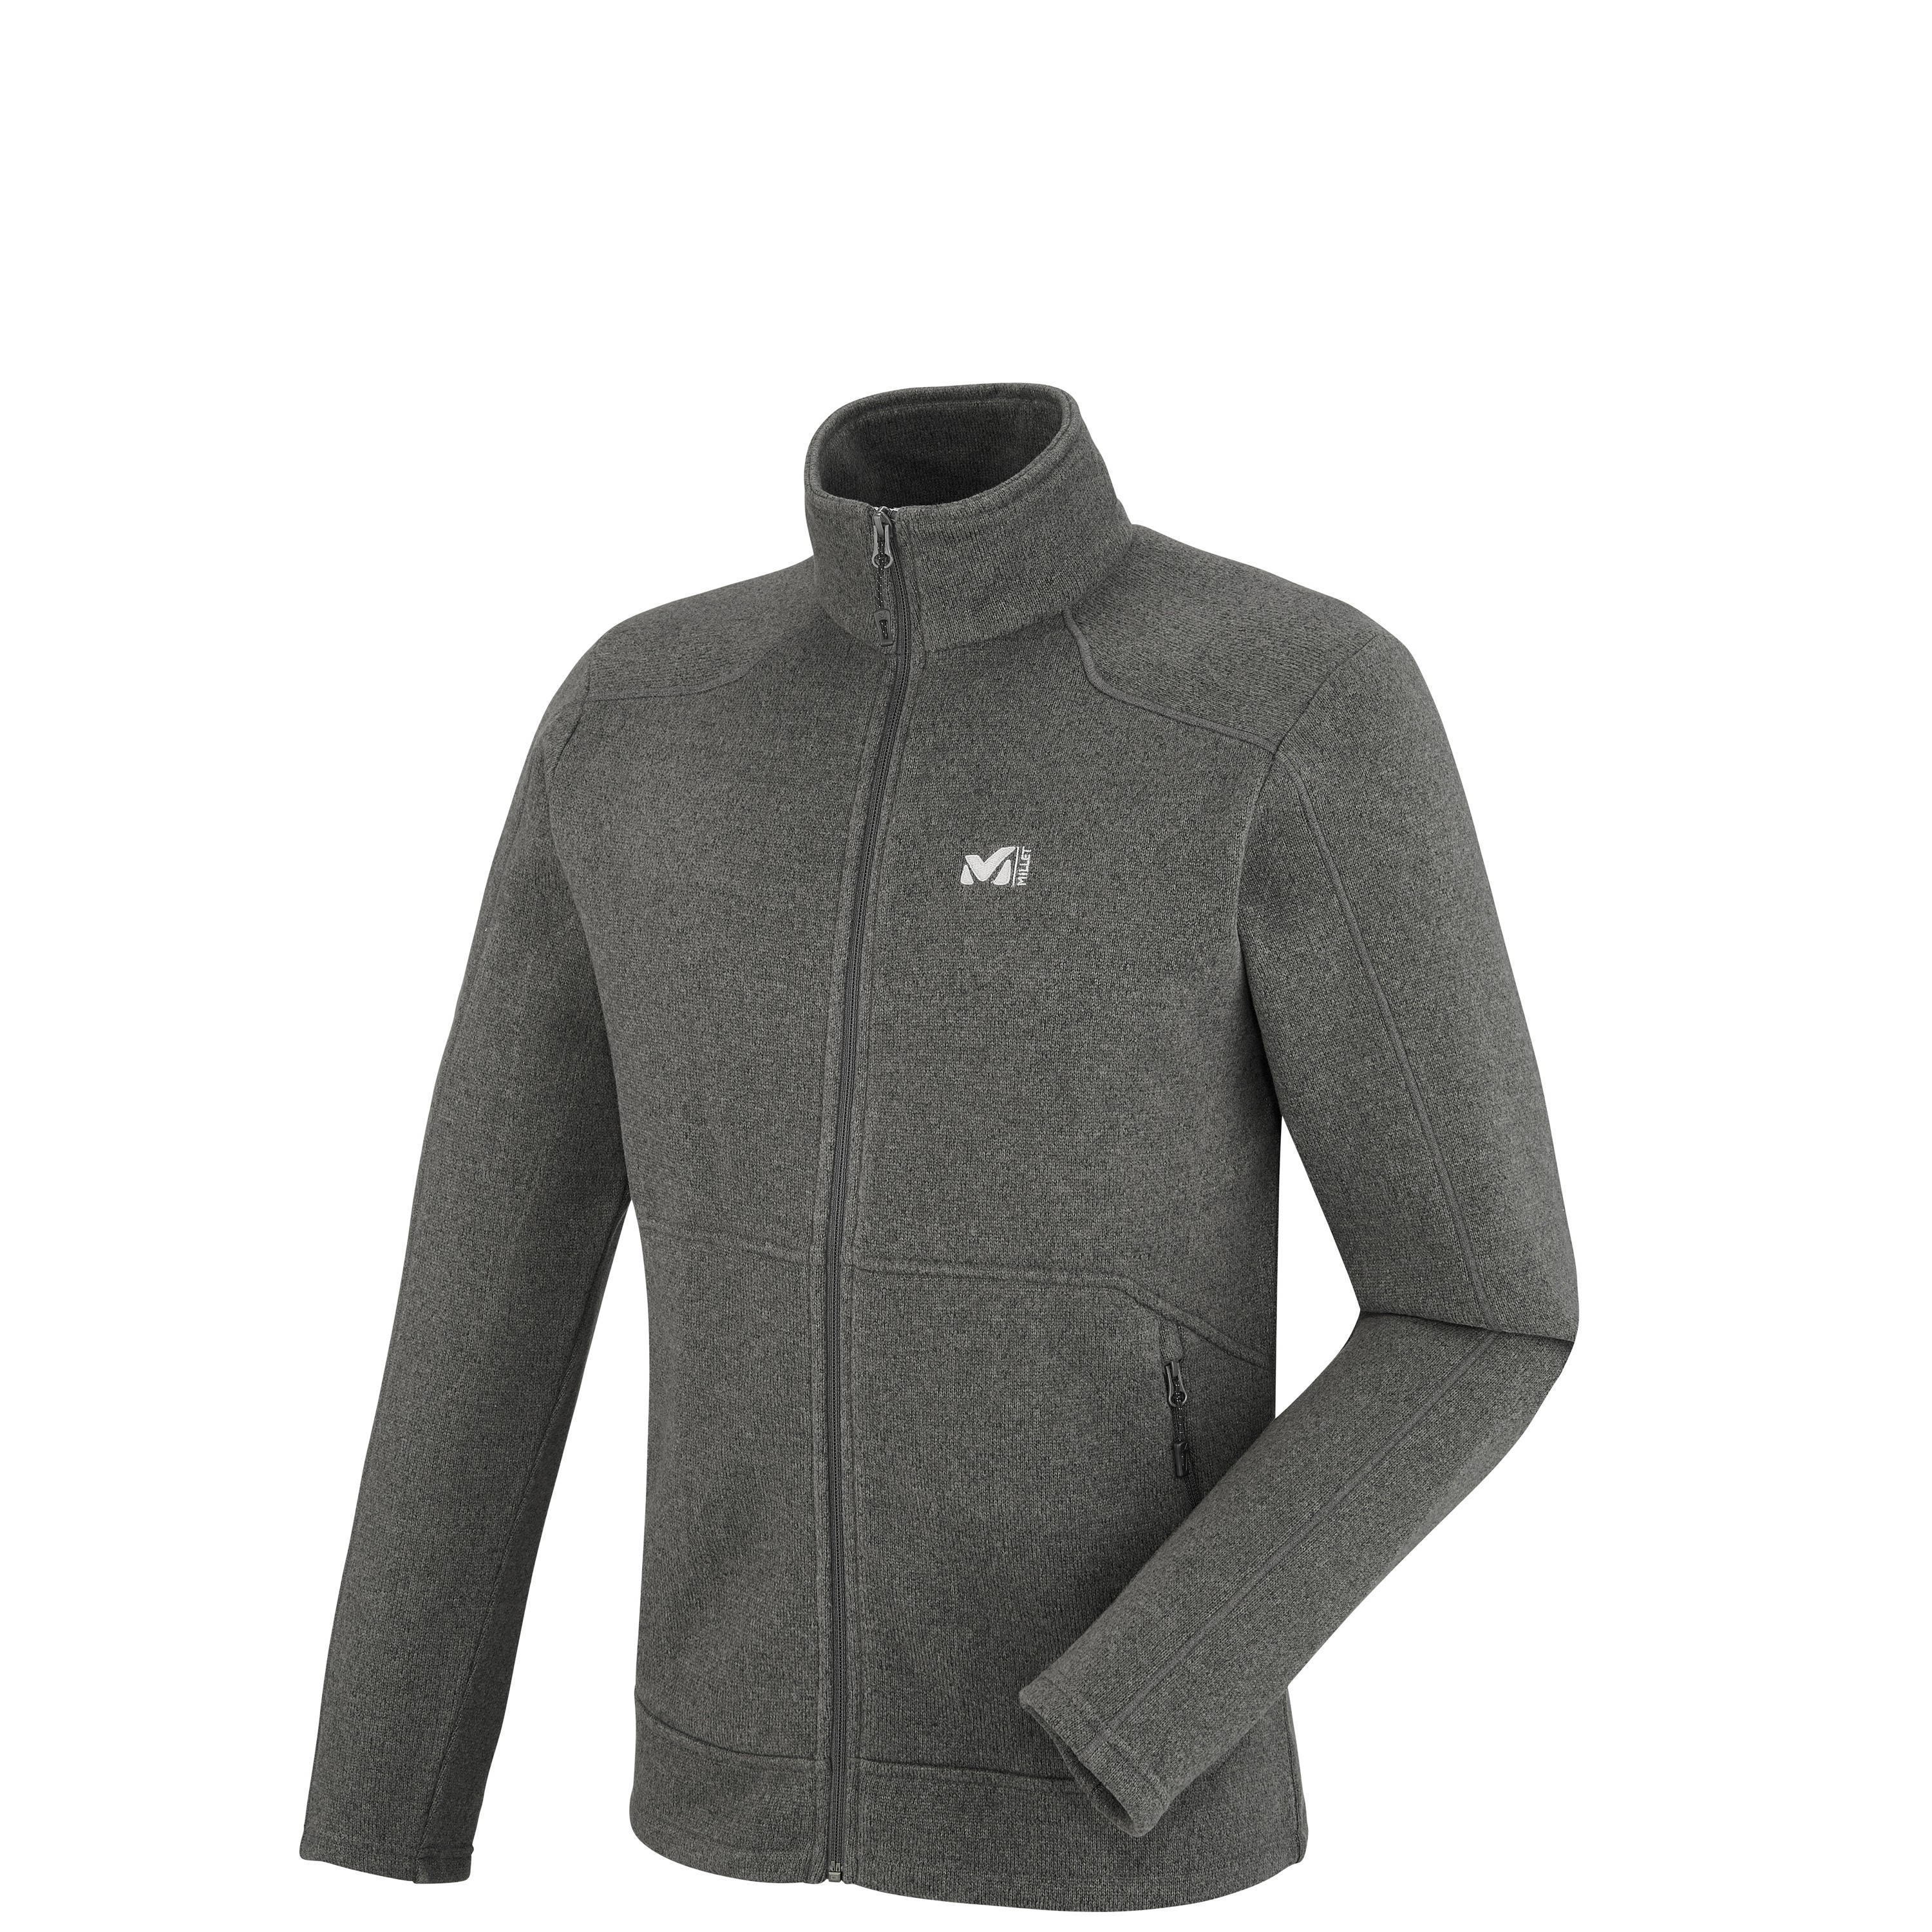 Trekking - Men's Fleece jacket - Grey HICKORY FLEECE JKT Millet